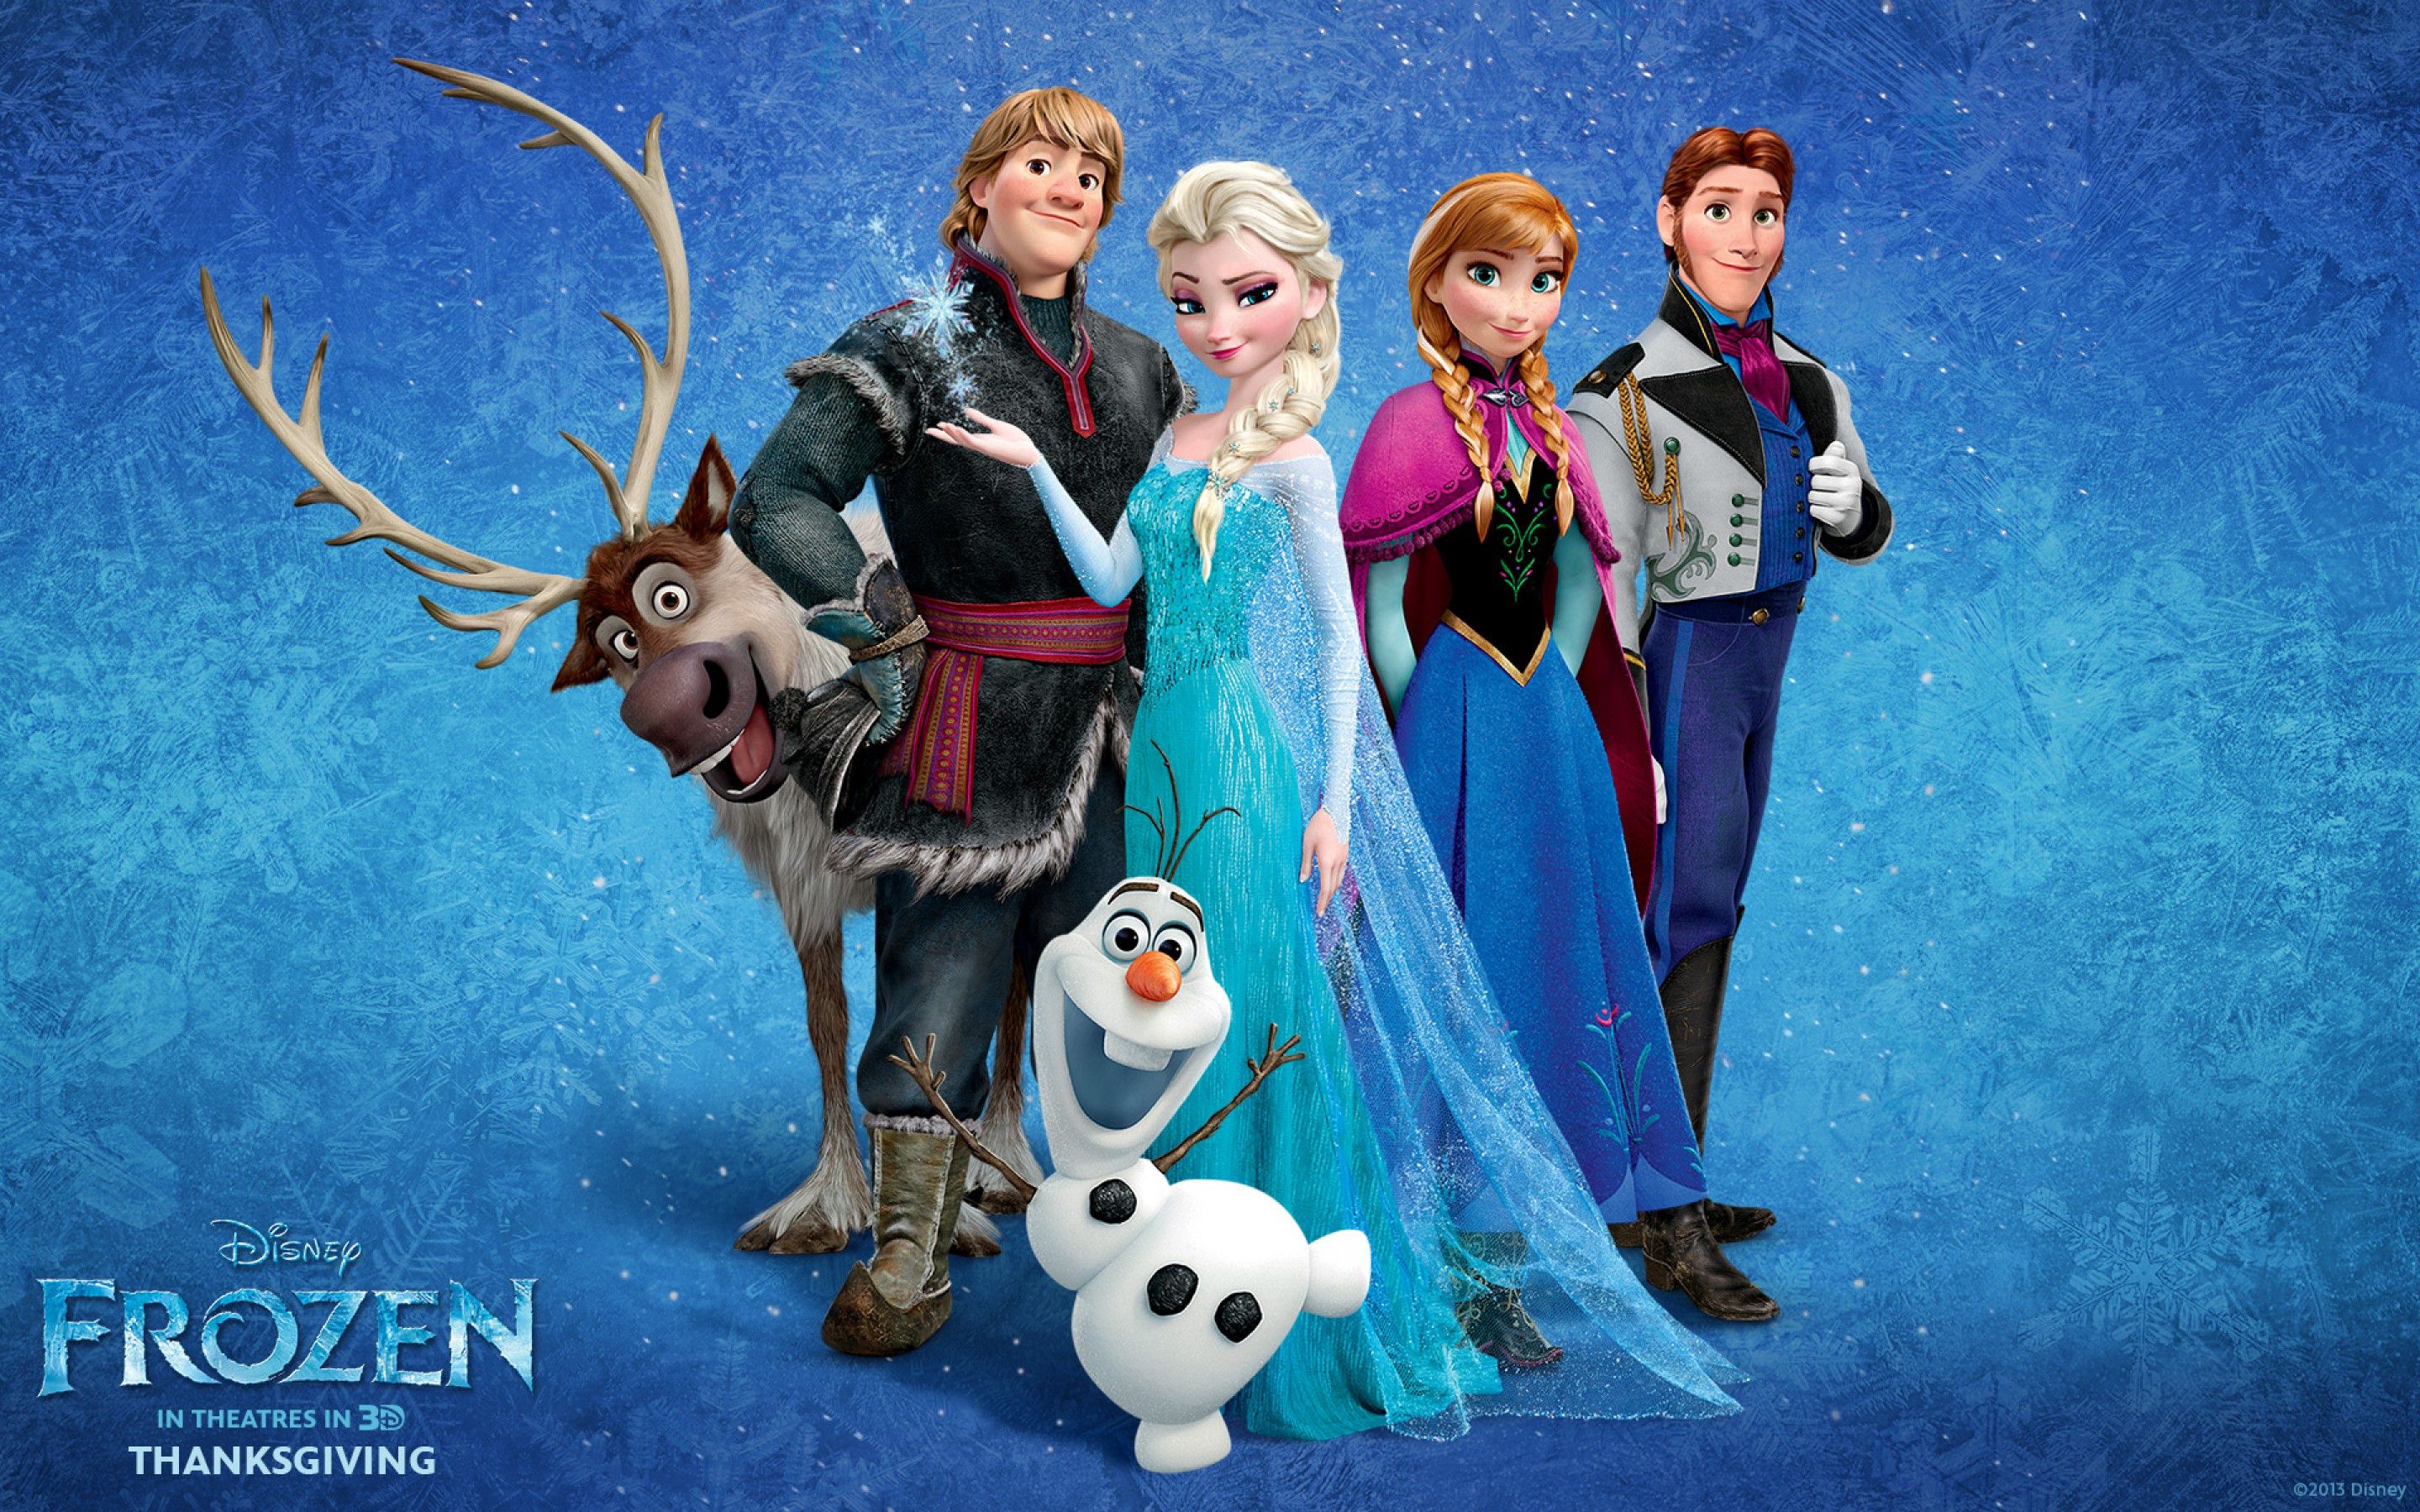 Frozen 10 -Let’s Discover 15 Amazing Facts About Disney’s Frozen